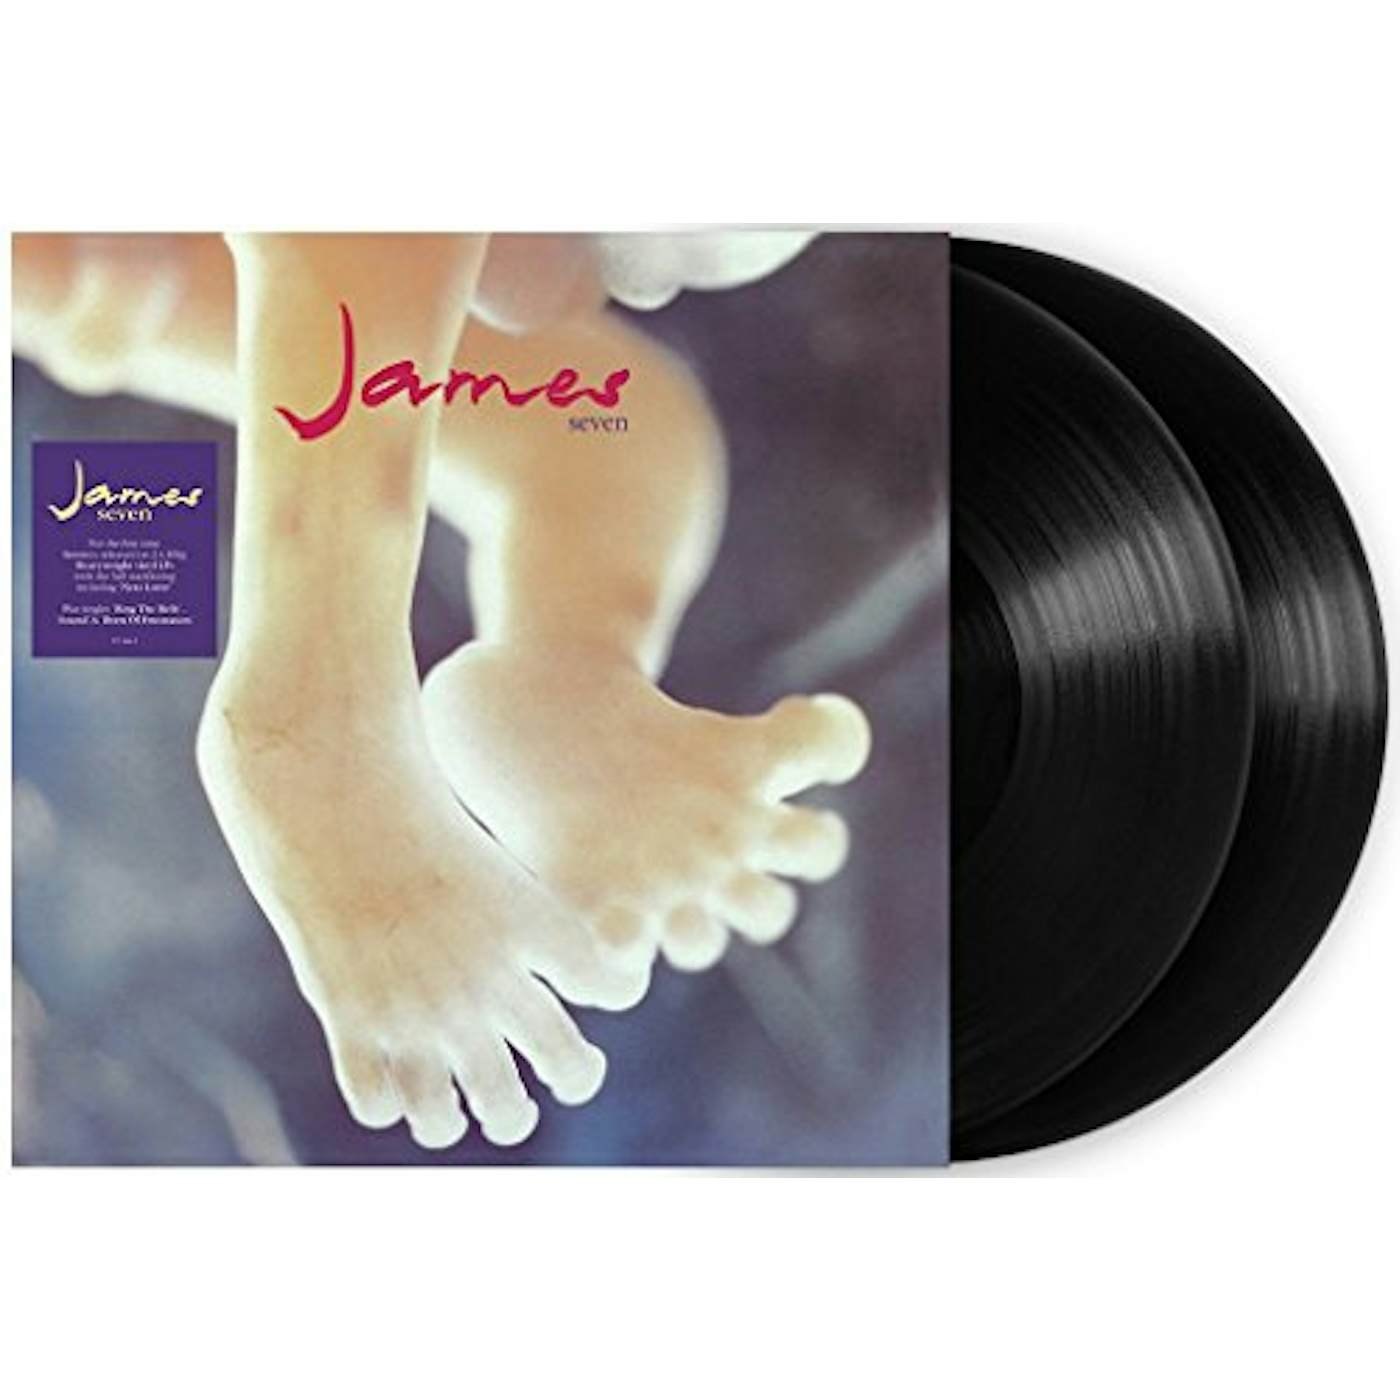 James Seven Vinyl Record